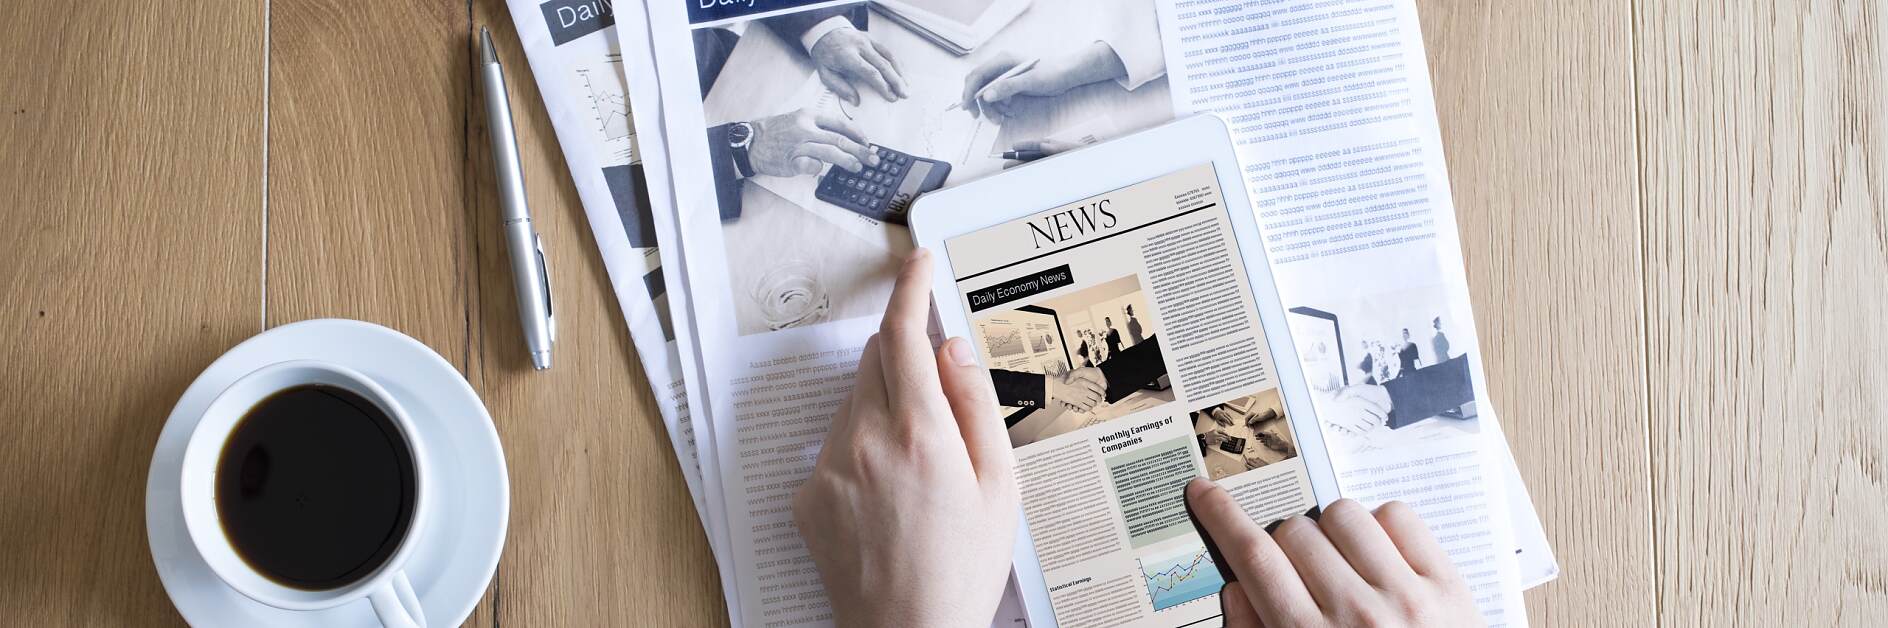 Kombination dagstidning-iPad papper och tryck